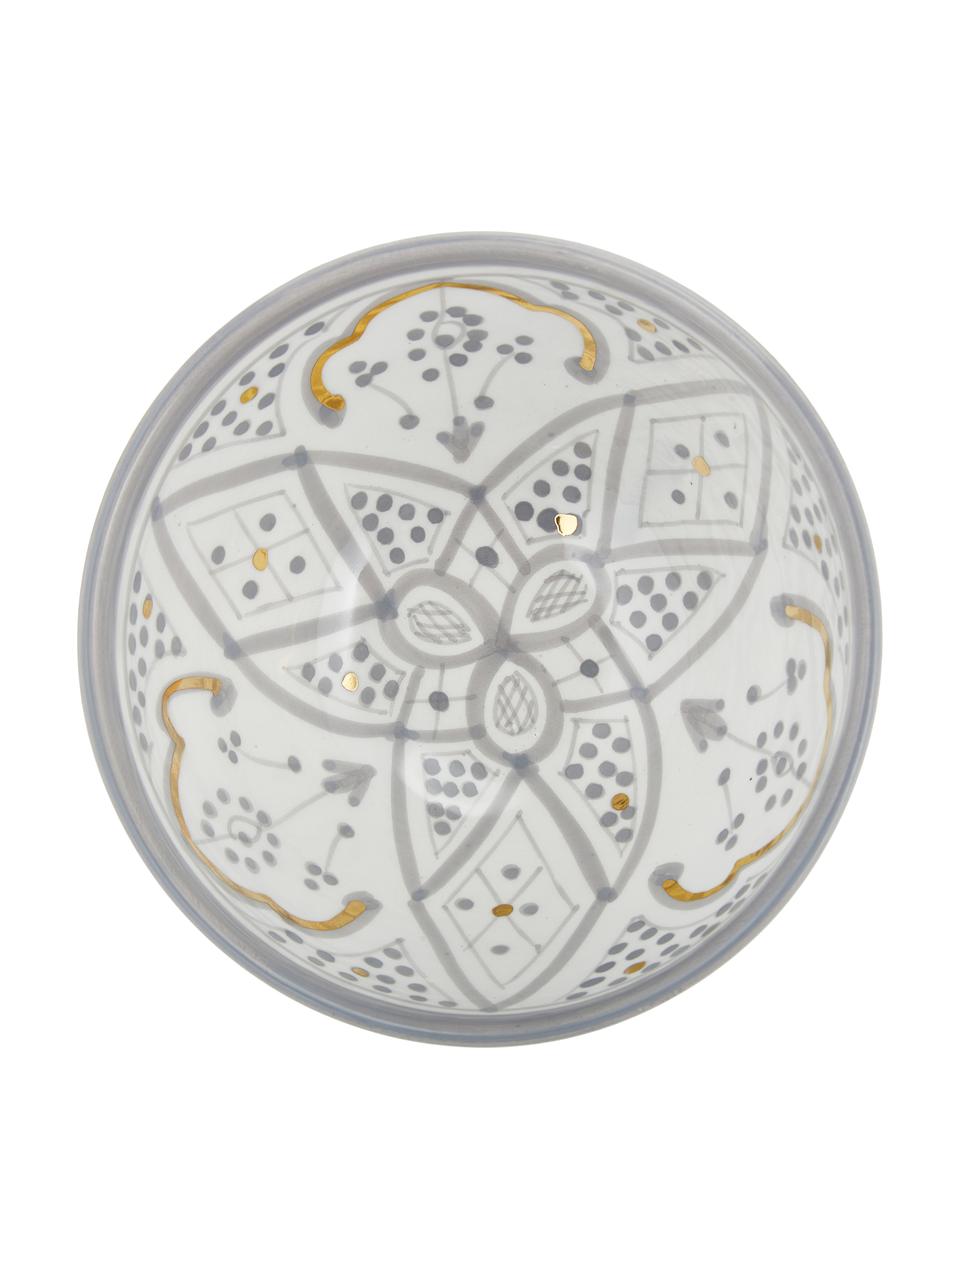 Handgemachtes marokkanisches Schälchen Beldi mit Goldrand, Ø 15 cm, Keramik, Hellgrau, Cremefarben, Gold, Ø 15 x H 9 cm